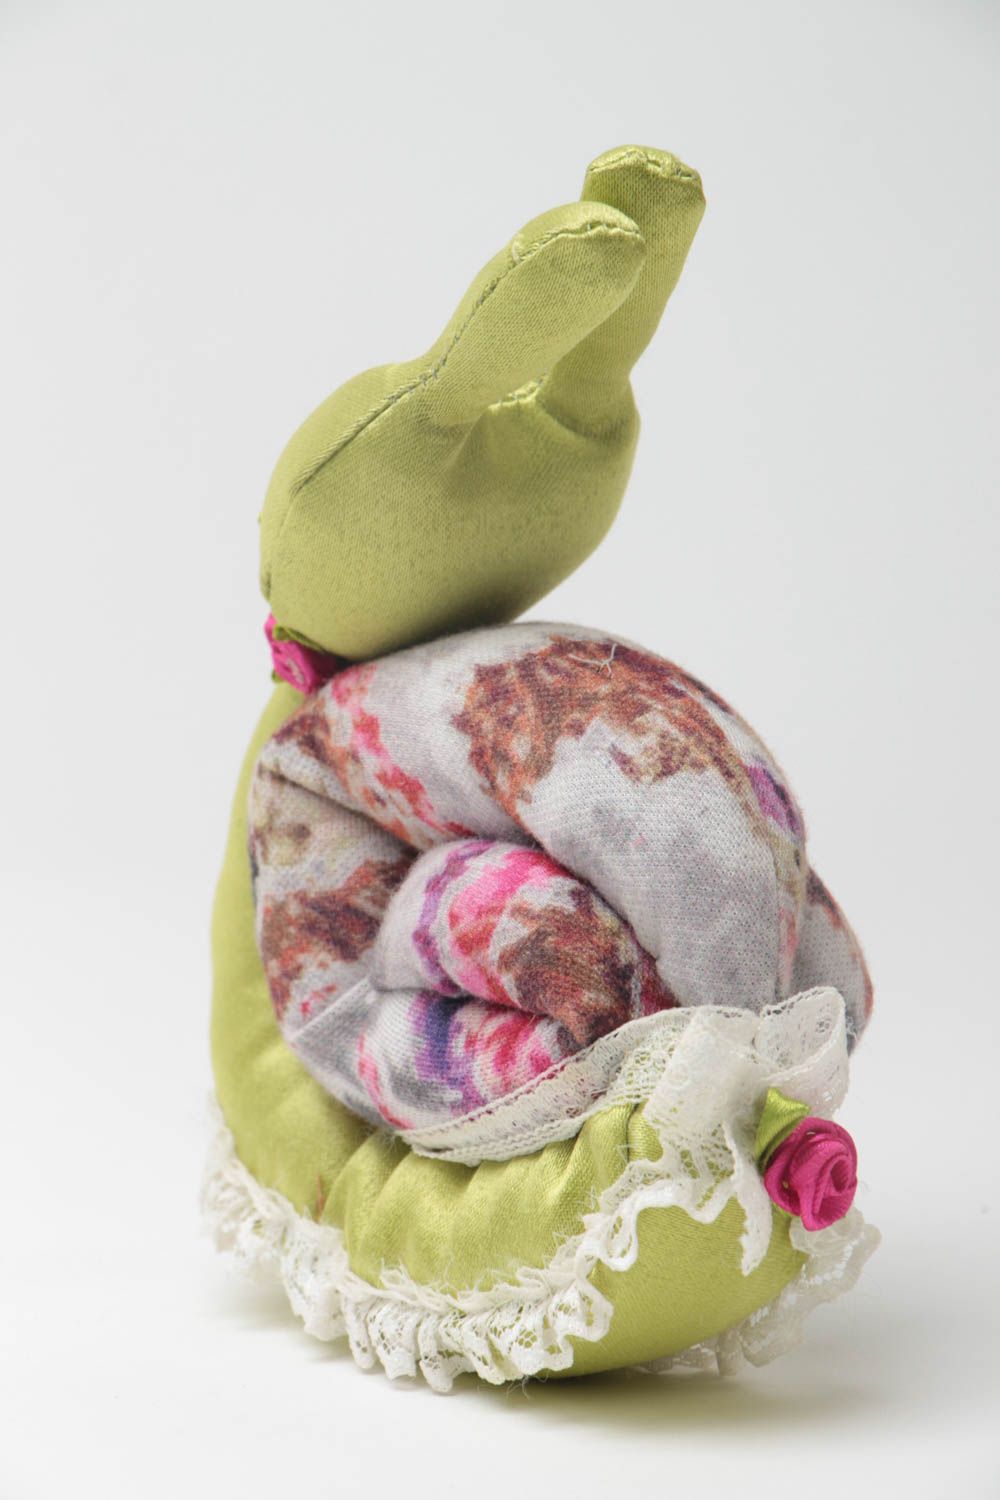 Textil Kuscheltier Schnecke aus Trikotage bunt handmade Spielzeug für Kinder foto 4